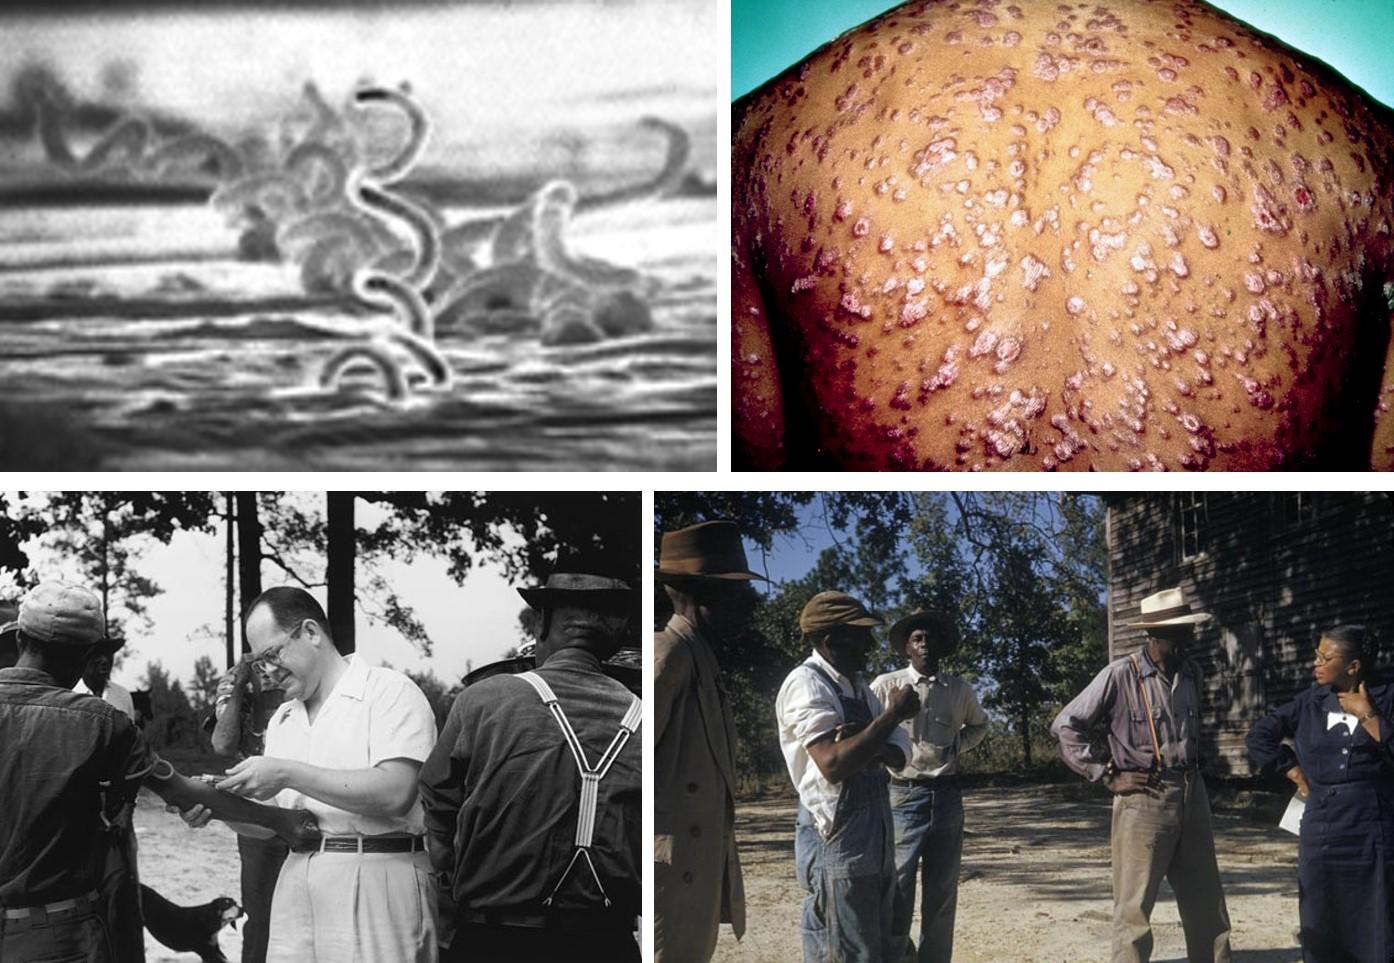 左上圖：梅毒螺旋體的電子顯微鏡圖；右上圖：第2期梅毒的全身性紅丘；左下圖：實驗者正在替受試者抽血，攝於1953年，此時抗生素已是標準療法，但政府從未想過要治療他們；右下圖：非洲裔的尤妮斯•禮薇斯(Eunice Rivers)護士正和受害者談話，禮薇斯擔任政府和受害者的溝通橋樑長達數十年，但她忽視拯救受害者的行為，飽受爭議。from: wikimedia & wikimedia